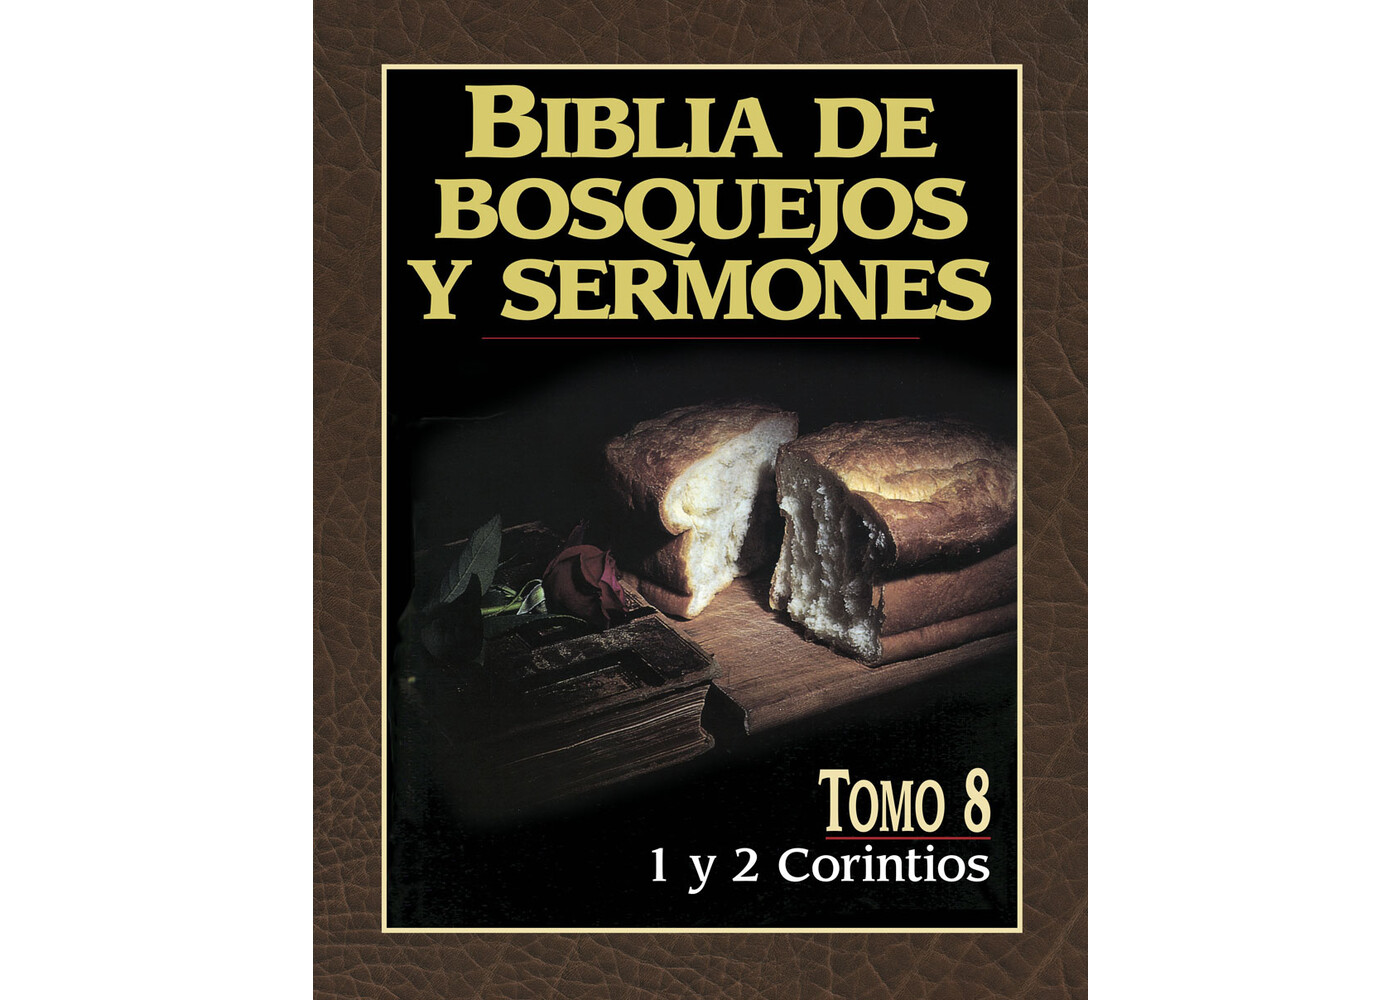 PORTAVOZ BIBLIA DE BOSQUEJOS Y SERMONES: 1 Y 2 CORINTIOS